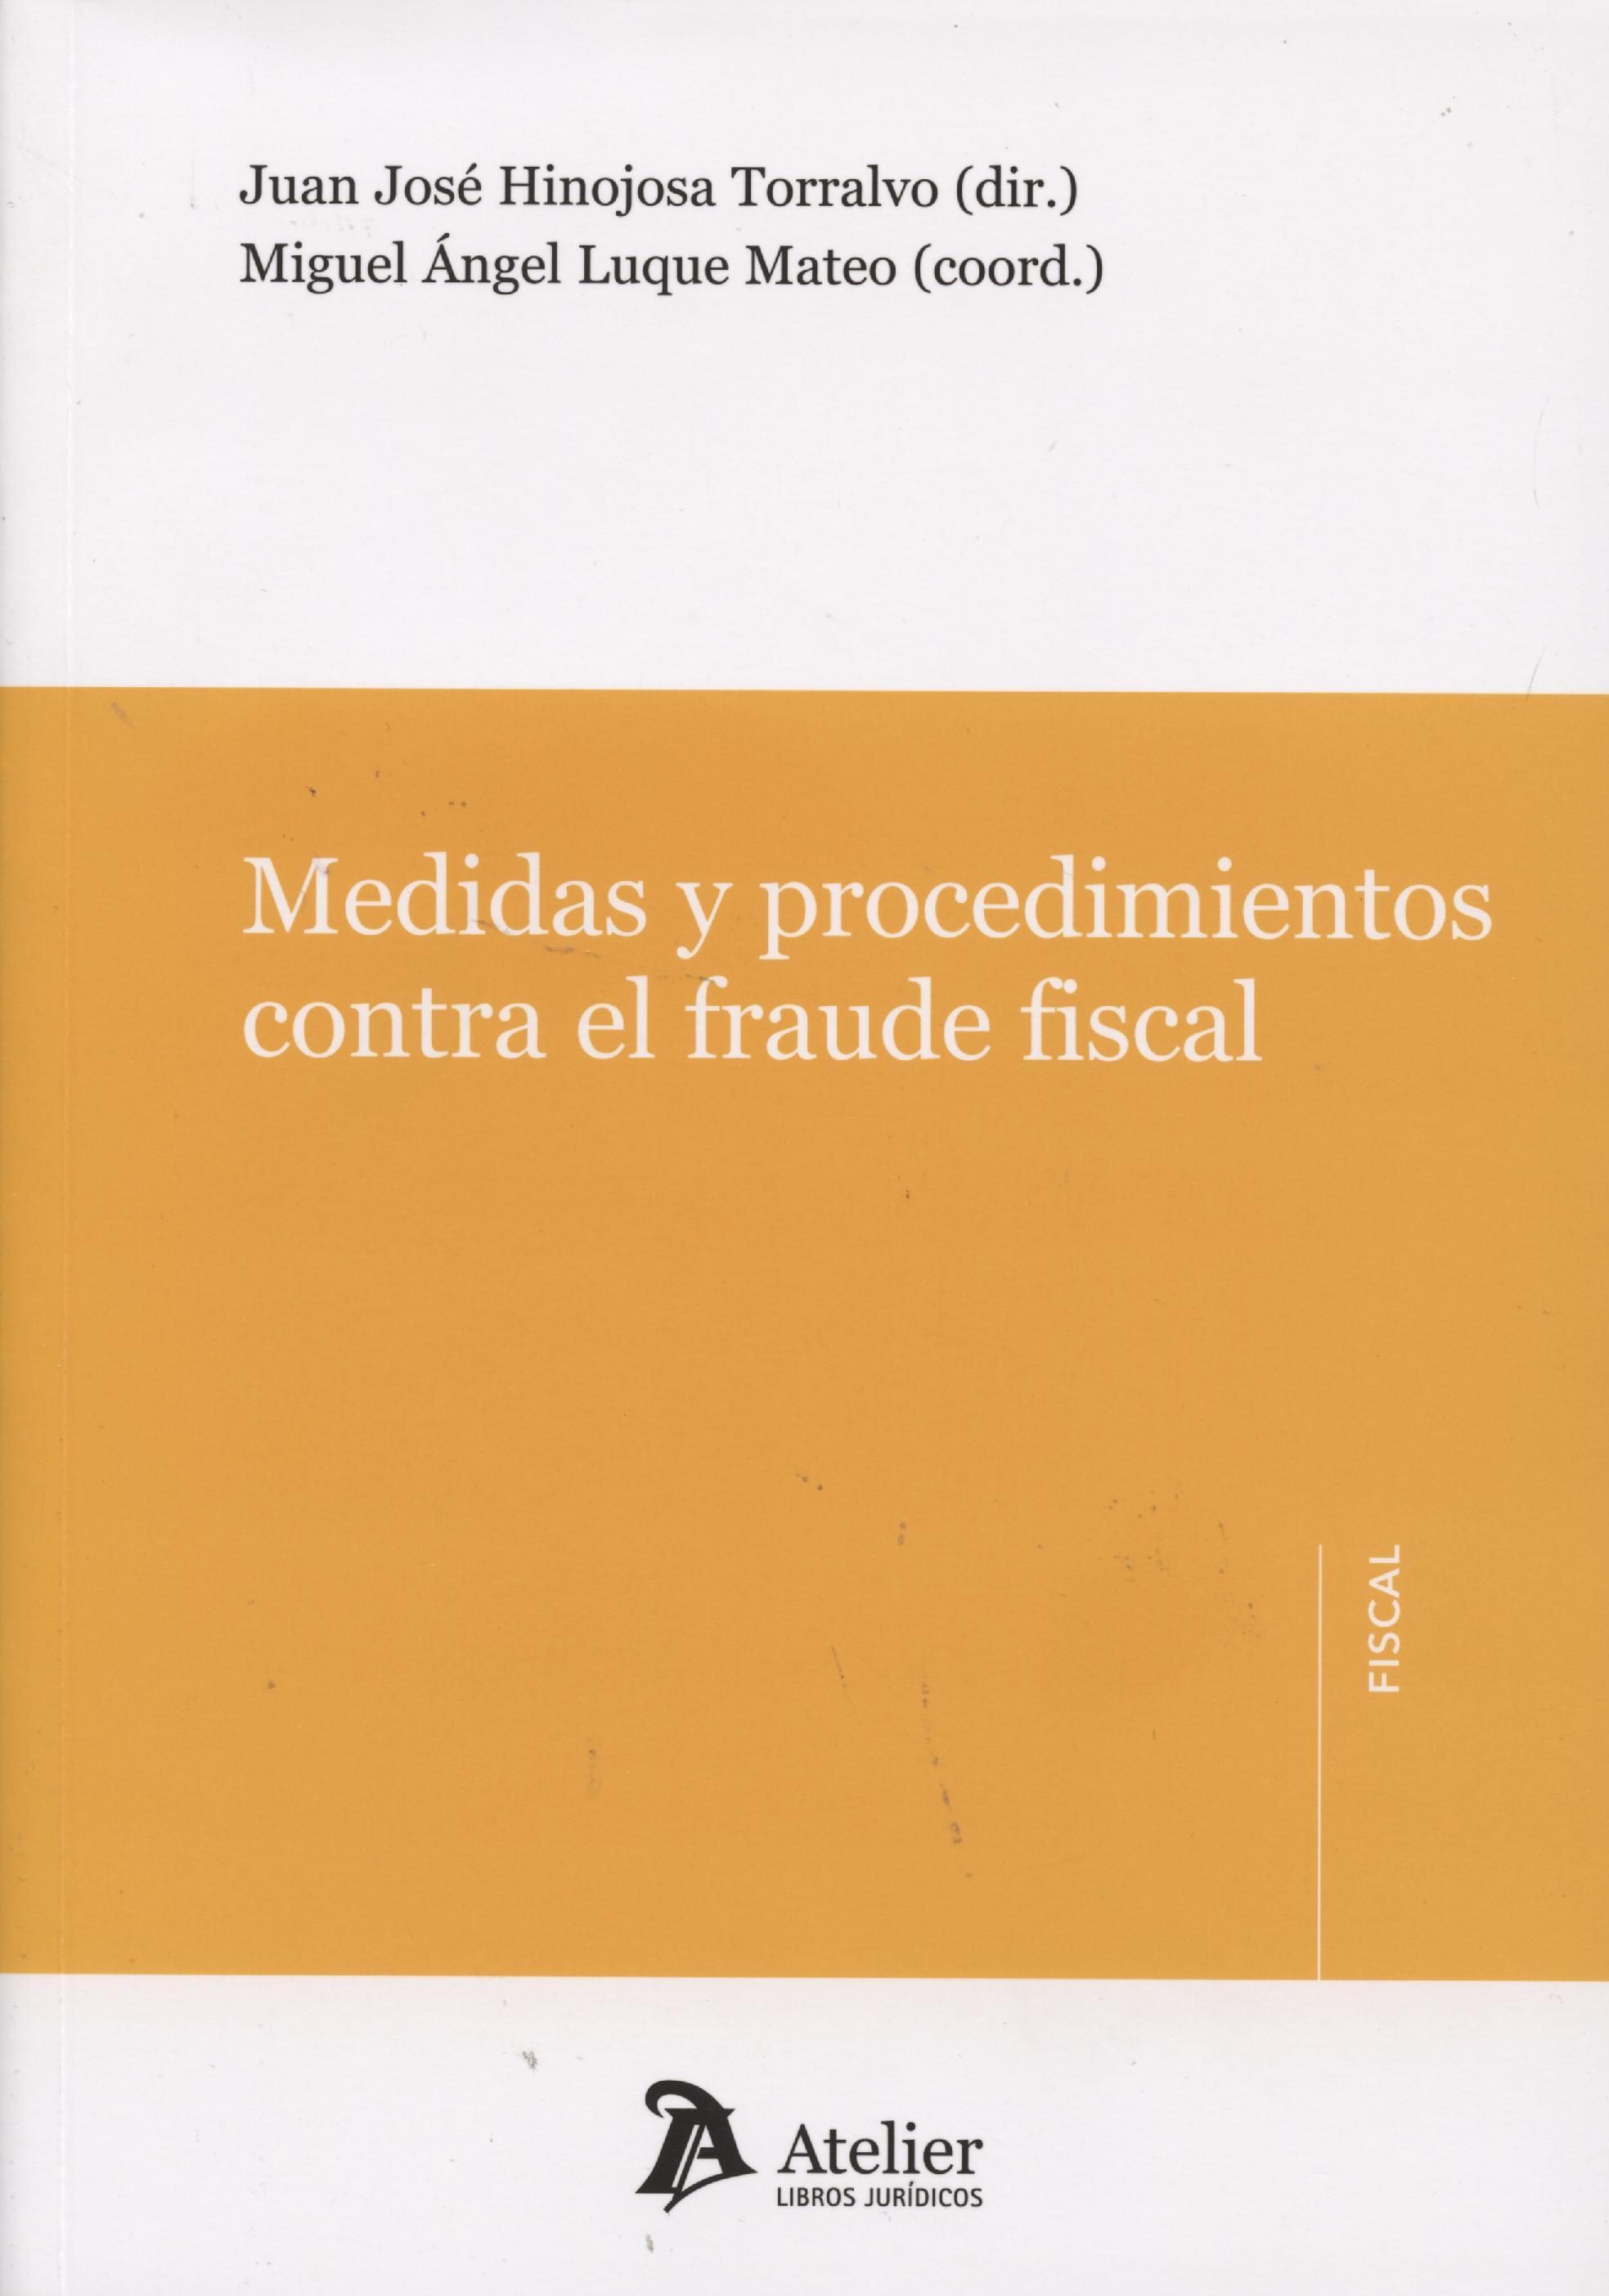 Imagen de portada del libro Medidas y procedimientos contra el fraude fiscal